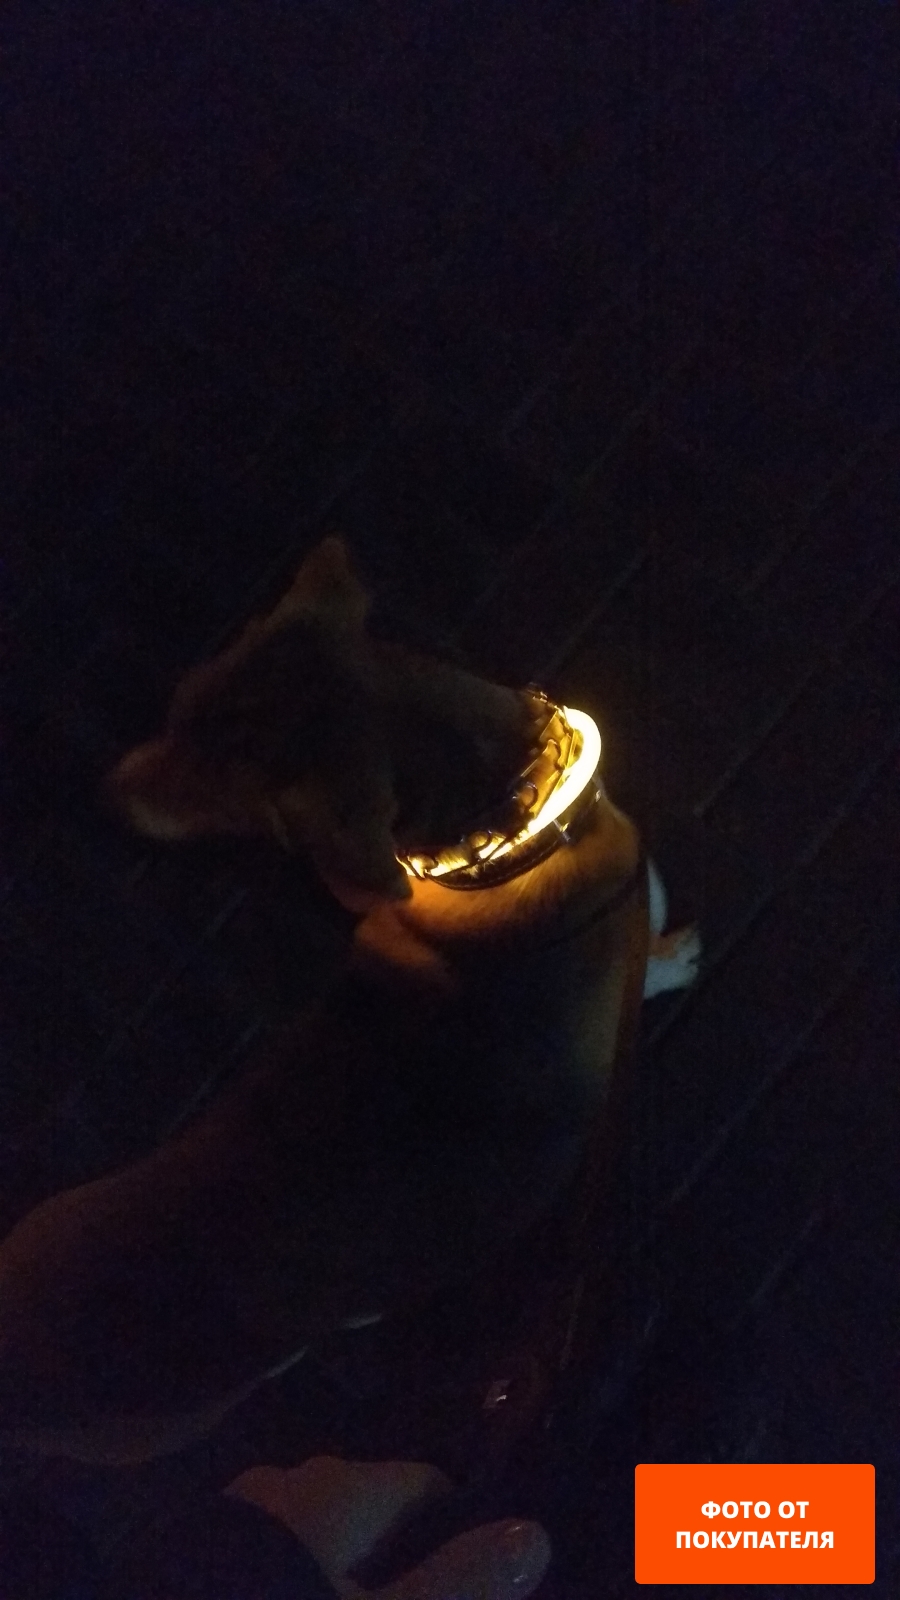 Ошейник для собак светящийся TRIXIE USB Flash XS-S 7 мм 35 см оранжевый (12703)